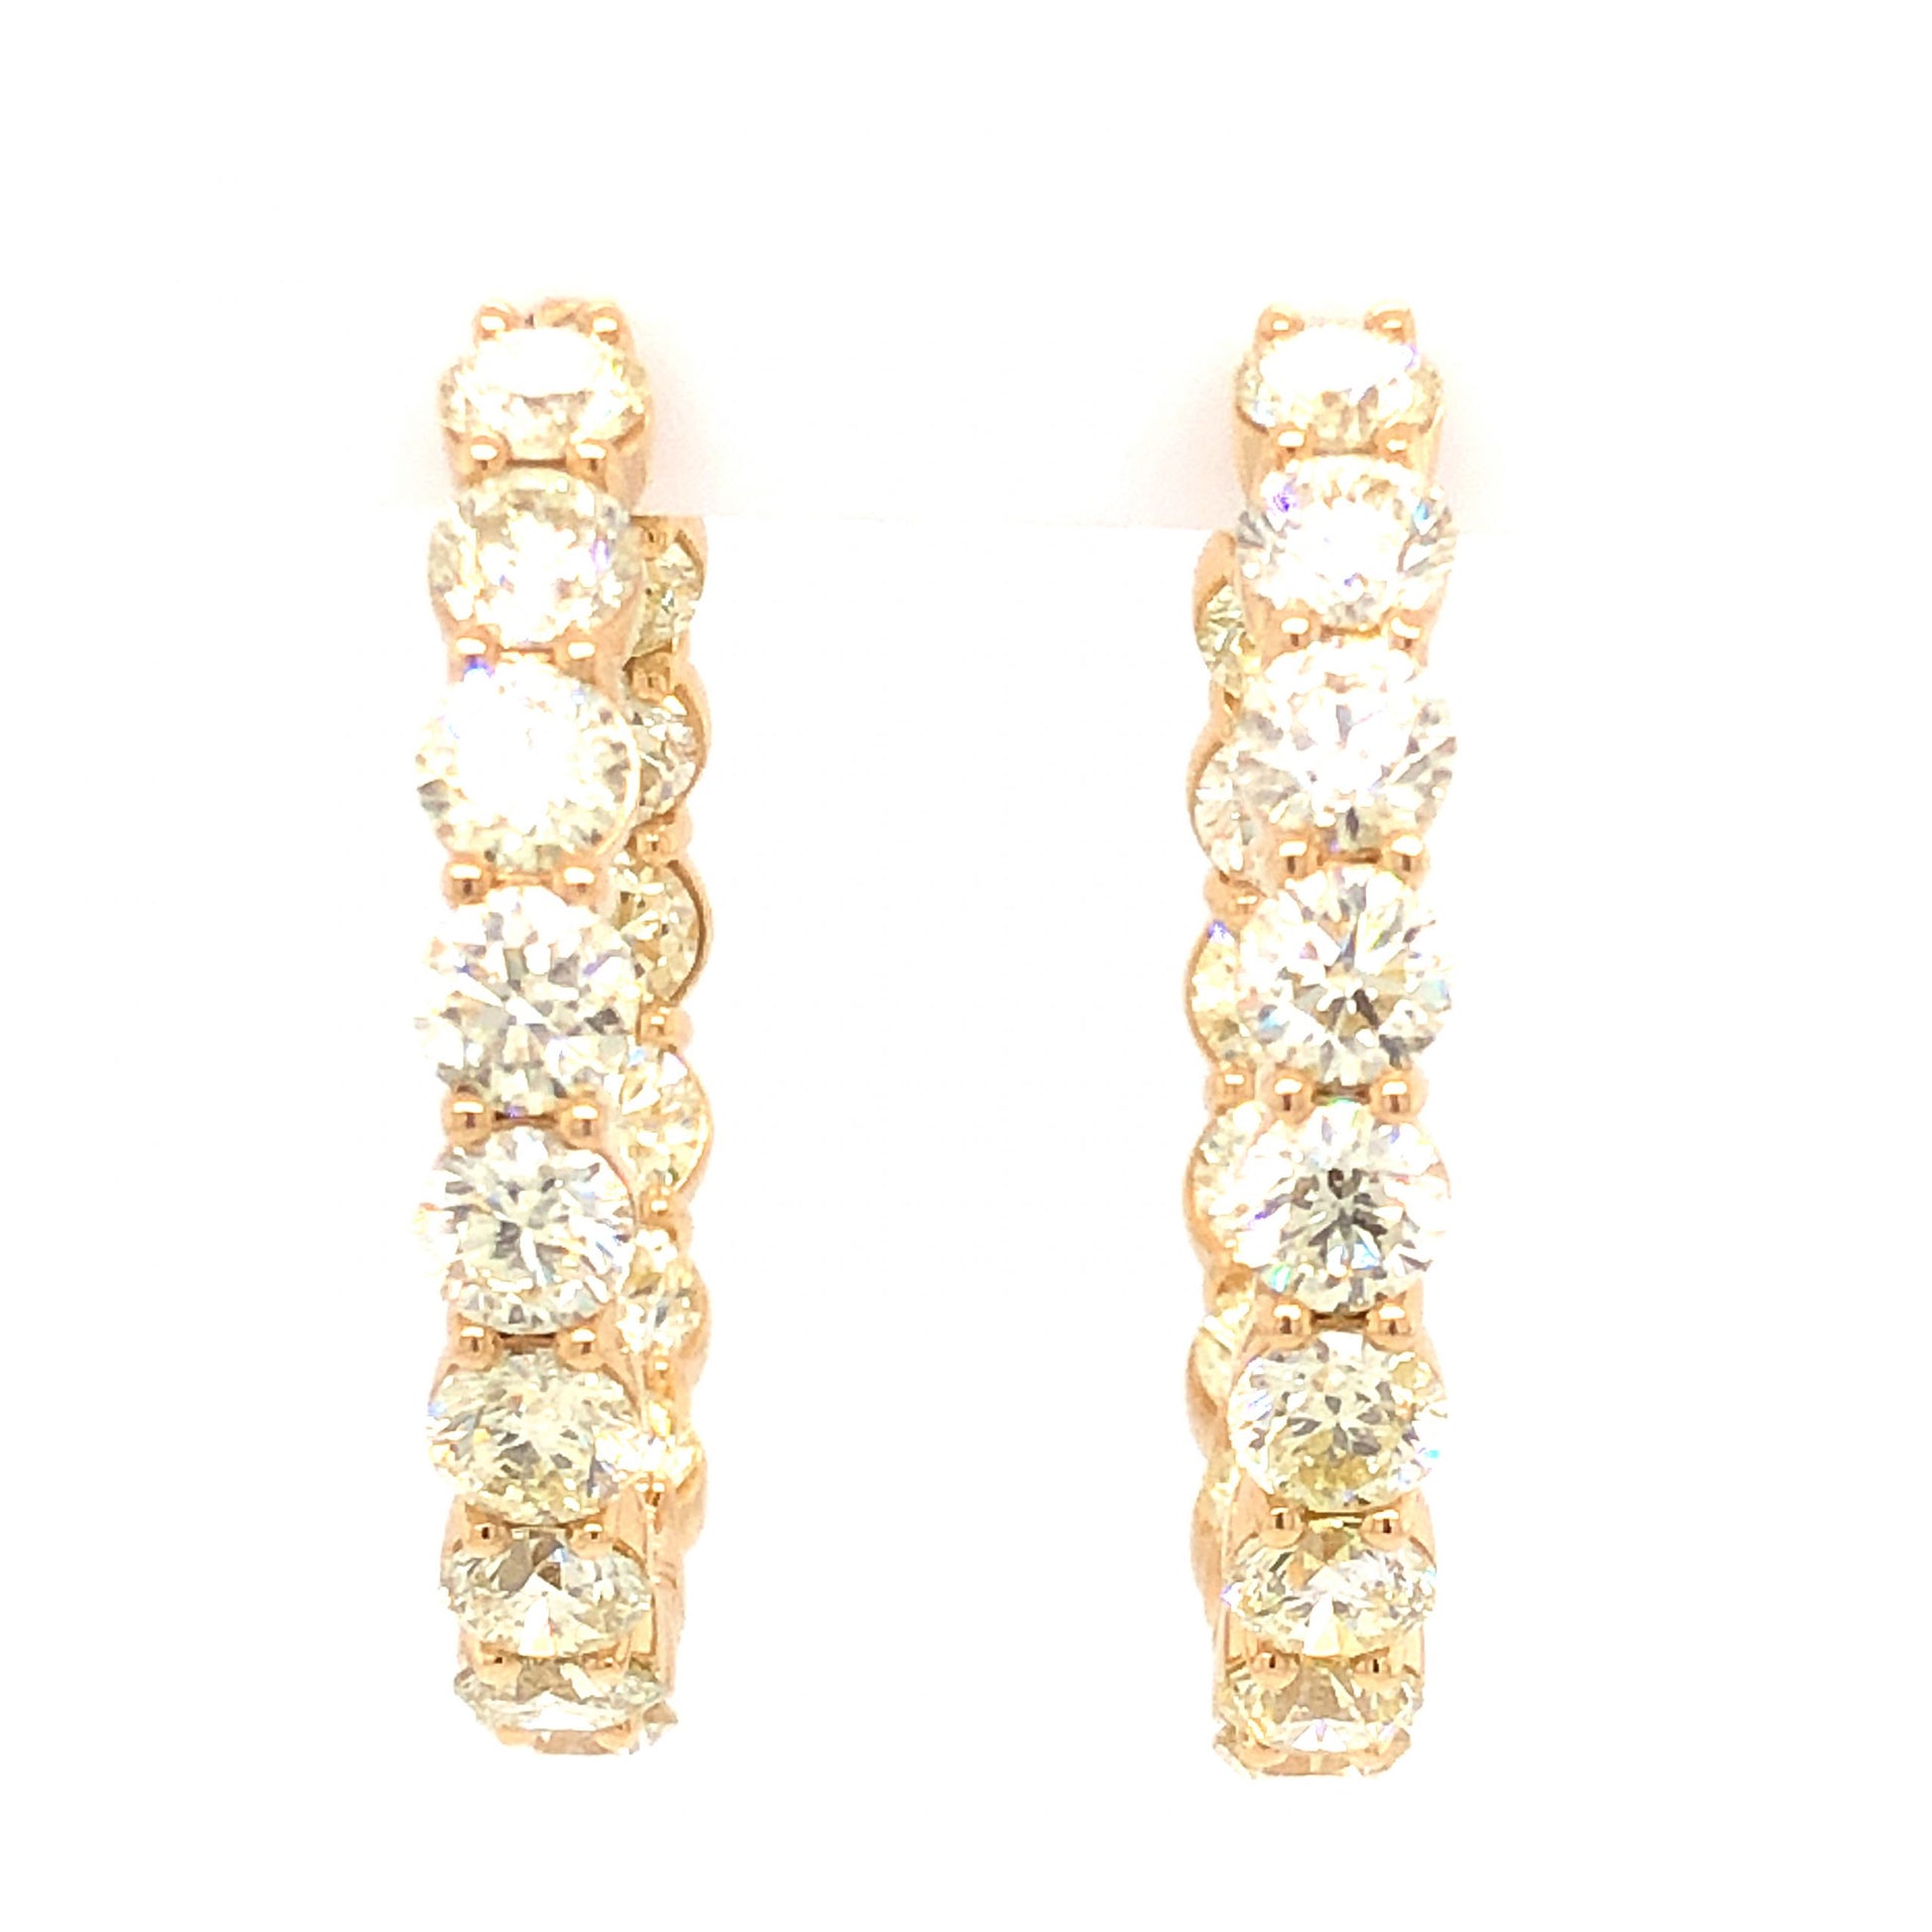 12.80 Carat Diamond Hoop Earrings in 18K Yellow Gold